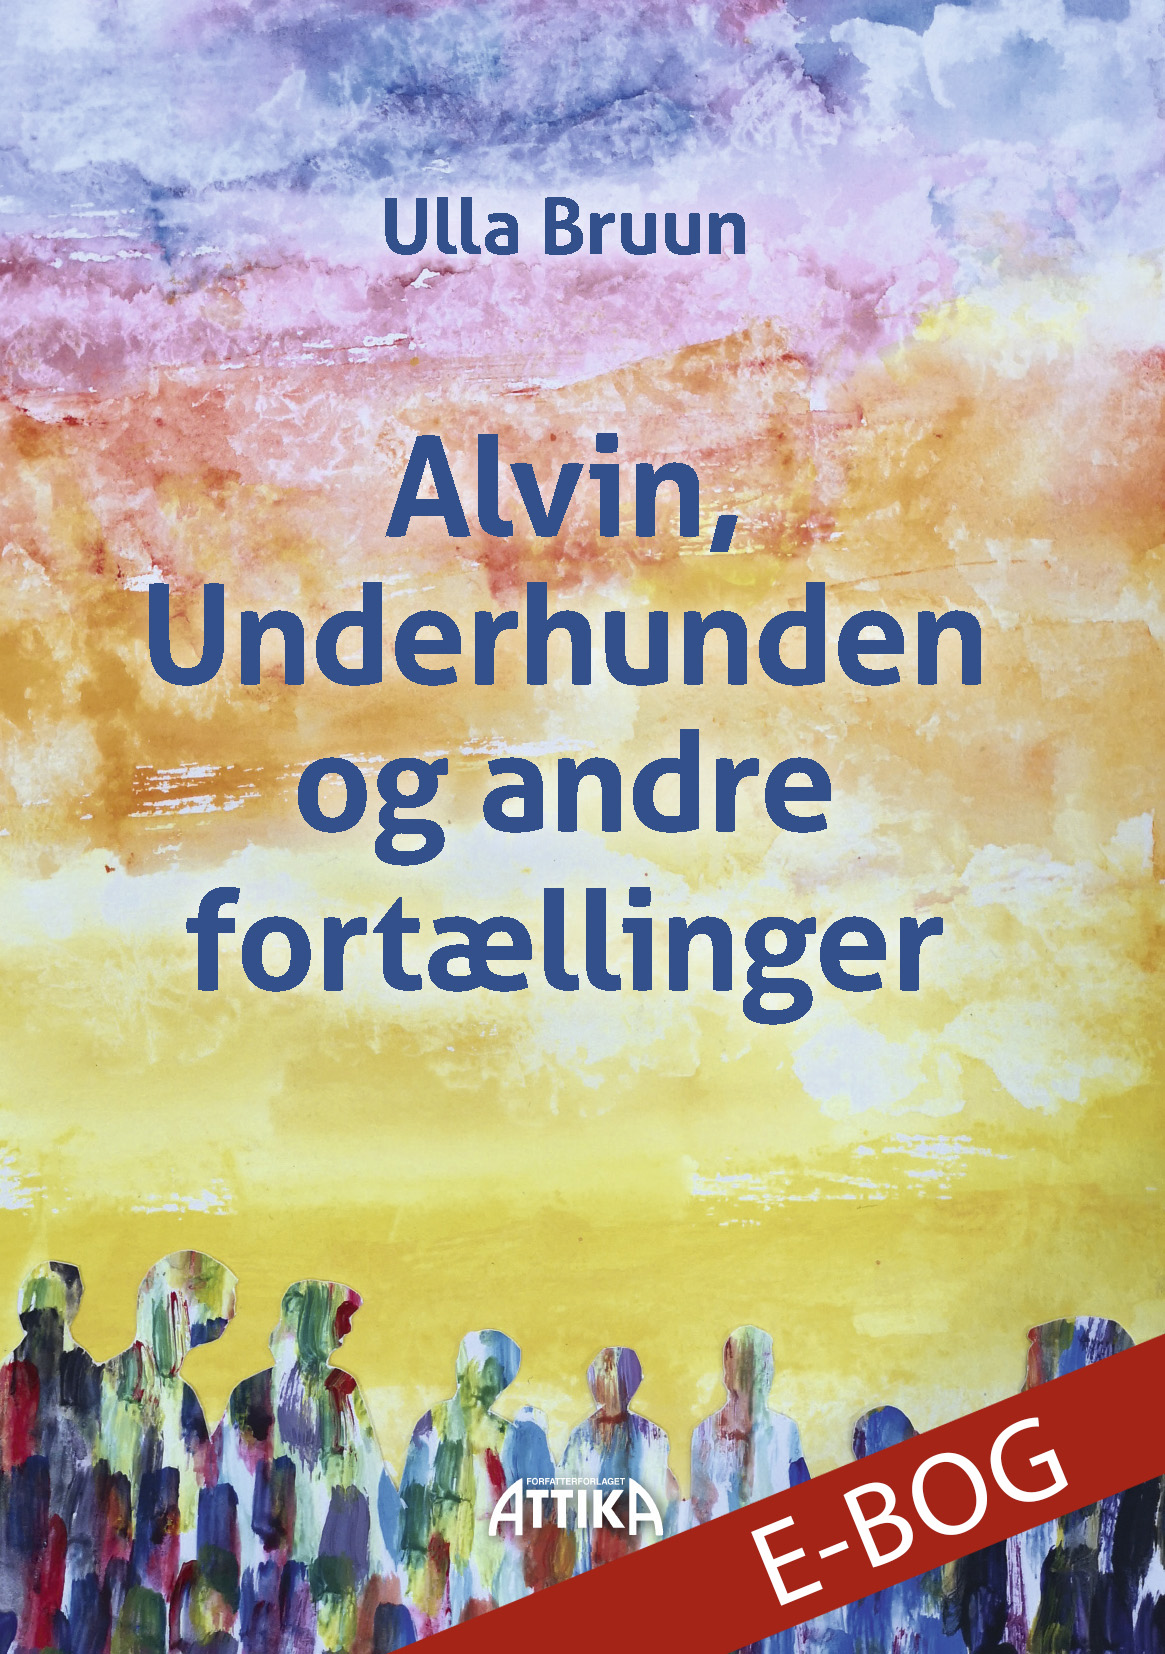 Ulla Bruun: Alvin, Underhunden og andre fortællinger (E-Bog)